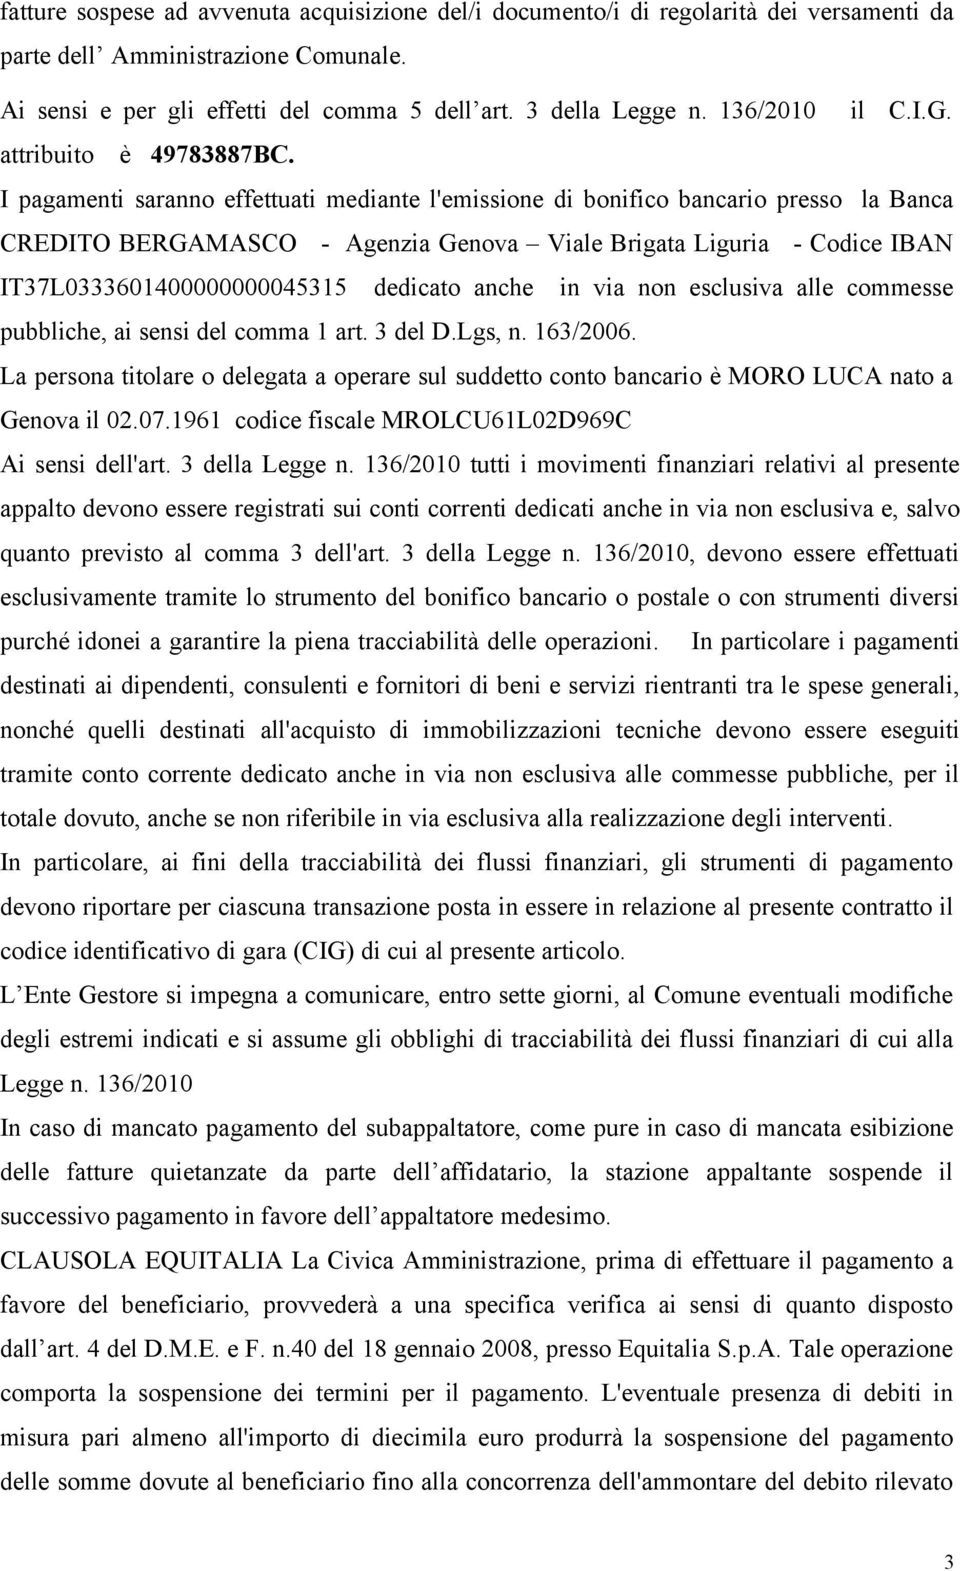 I pagamenti saranno effettuati mediante l'emissione di bonifico bancario presso la Banca CREDITO BERGAMASCO - Agenzia Genova Viale Brigata Liguria - Codice IBAN IT37L0333601400000000045315 dedicato